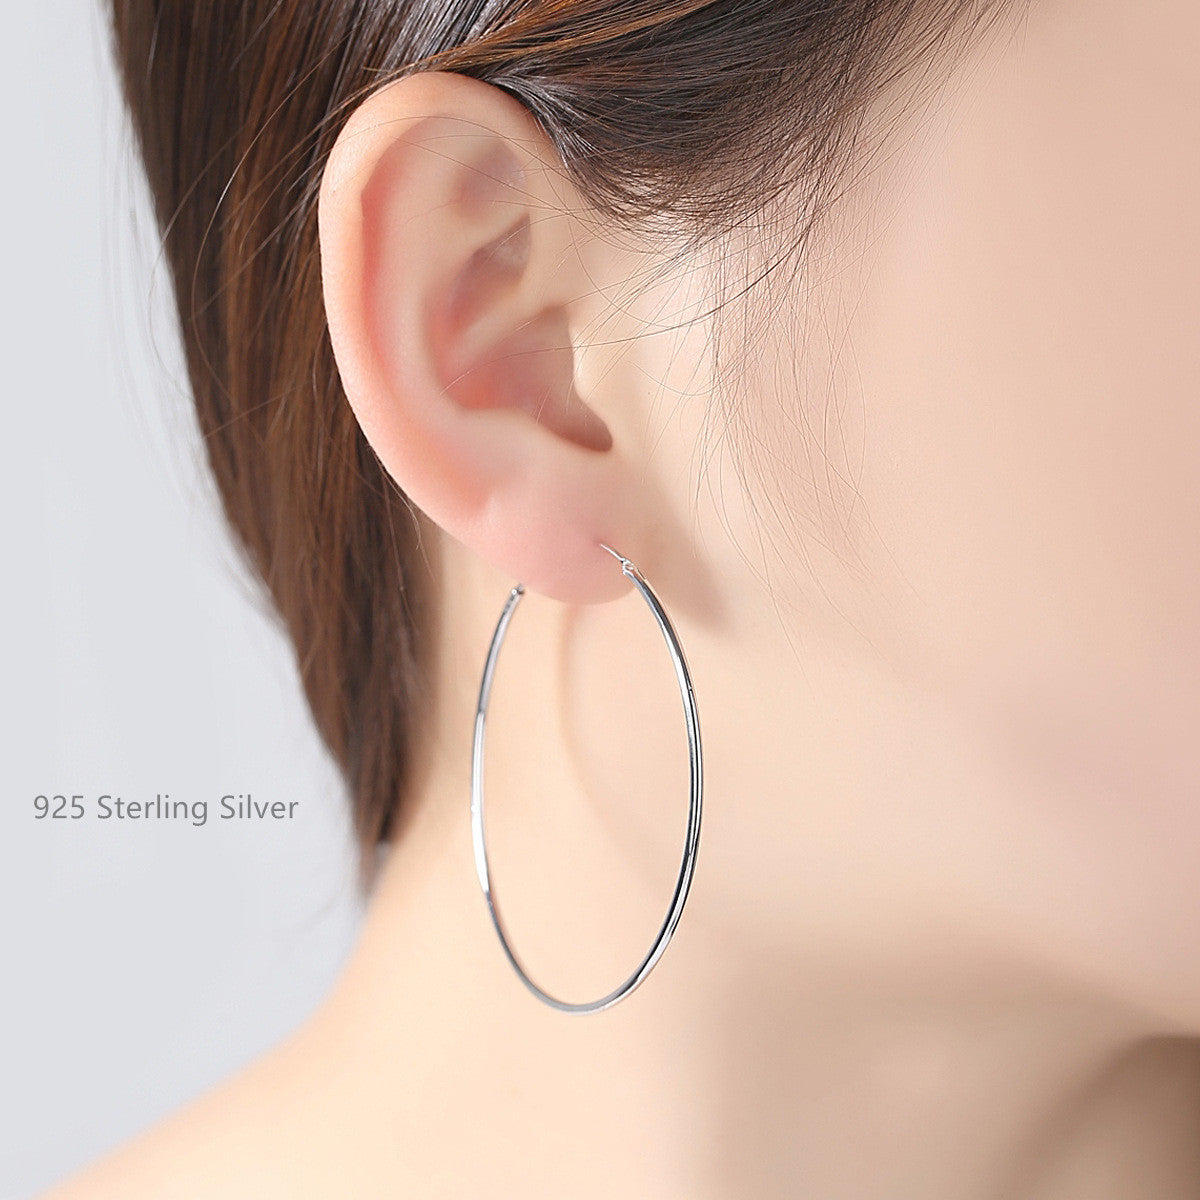 S925 Sterling Silver Hoop Earrings 10mm ~ 50mm Round Size, Circle Earring Hoops, Ear Wire AL537